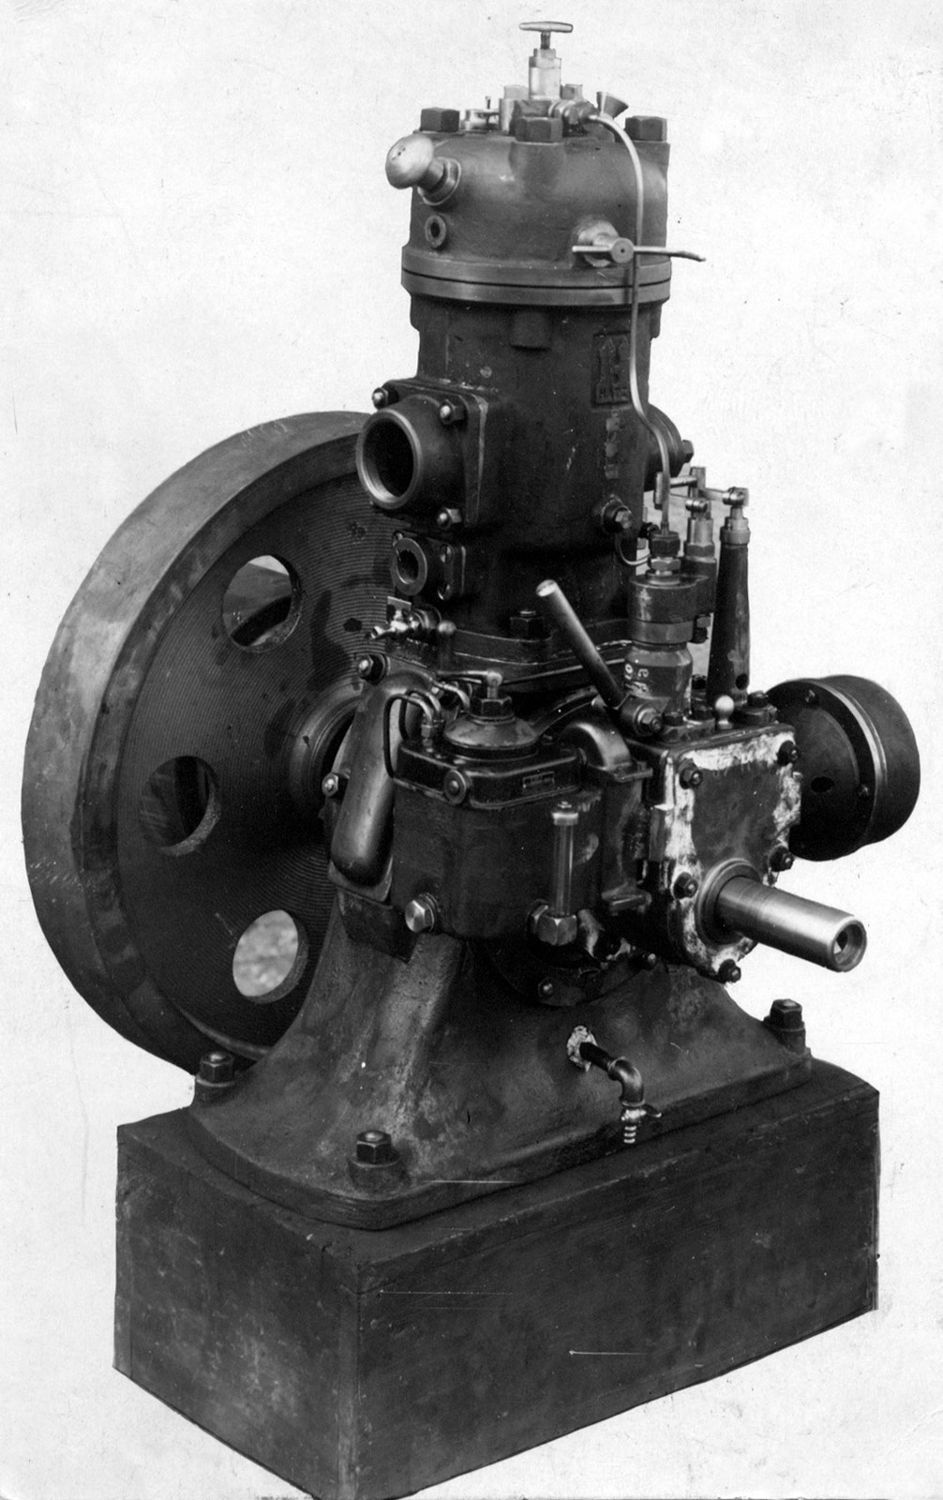 Historischer Hatz H3 war der erste wassergekühlte Dieselmotor der Motorenfabrik Hatz